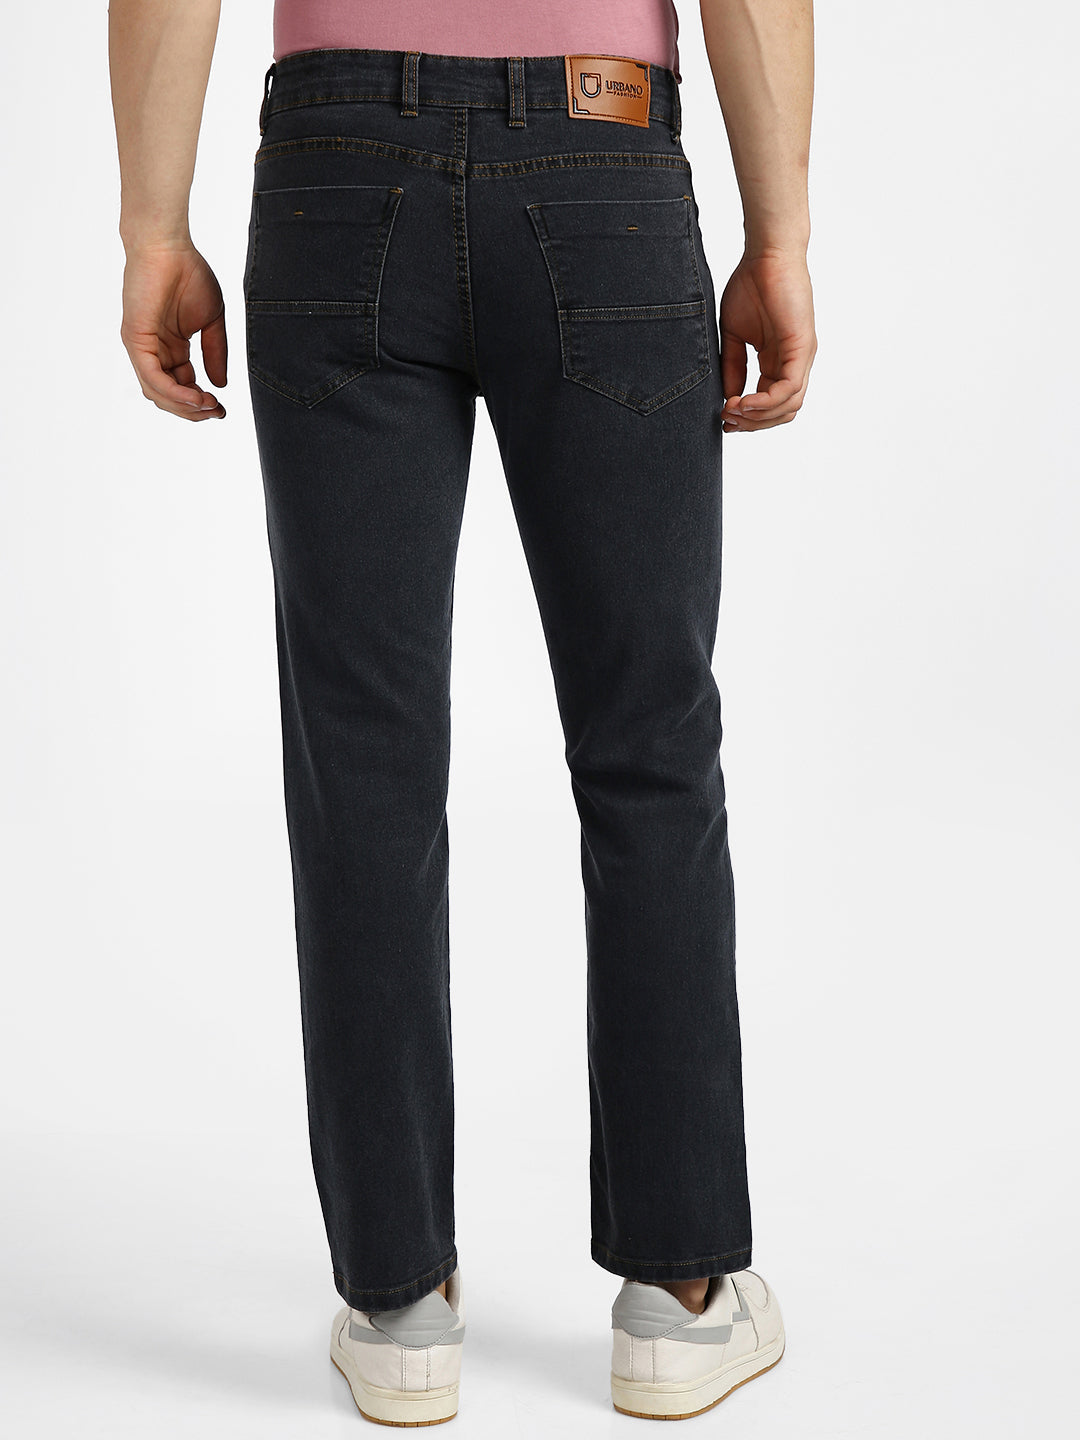 Men's Dark Grey Regular Fit Washed Jeans Stretchable